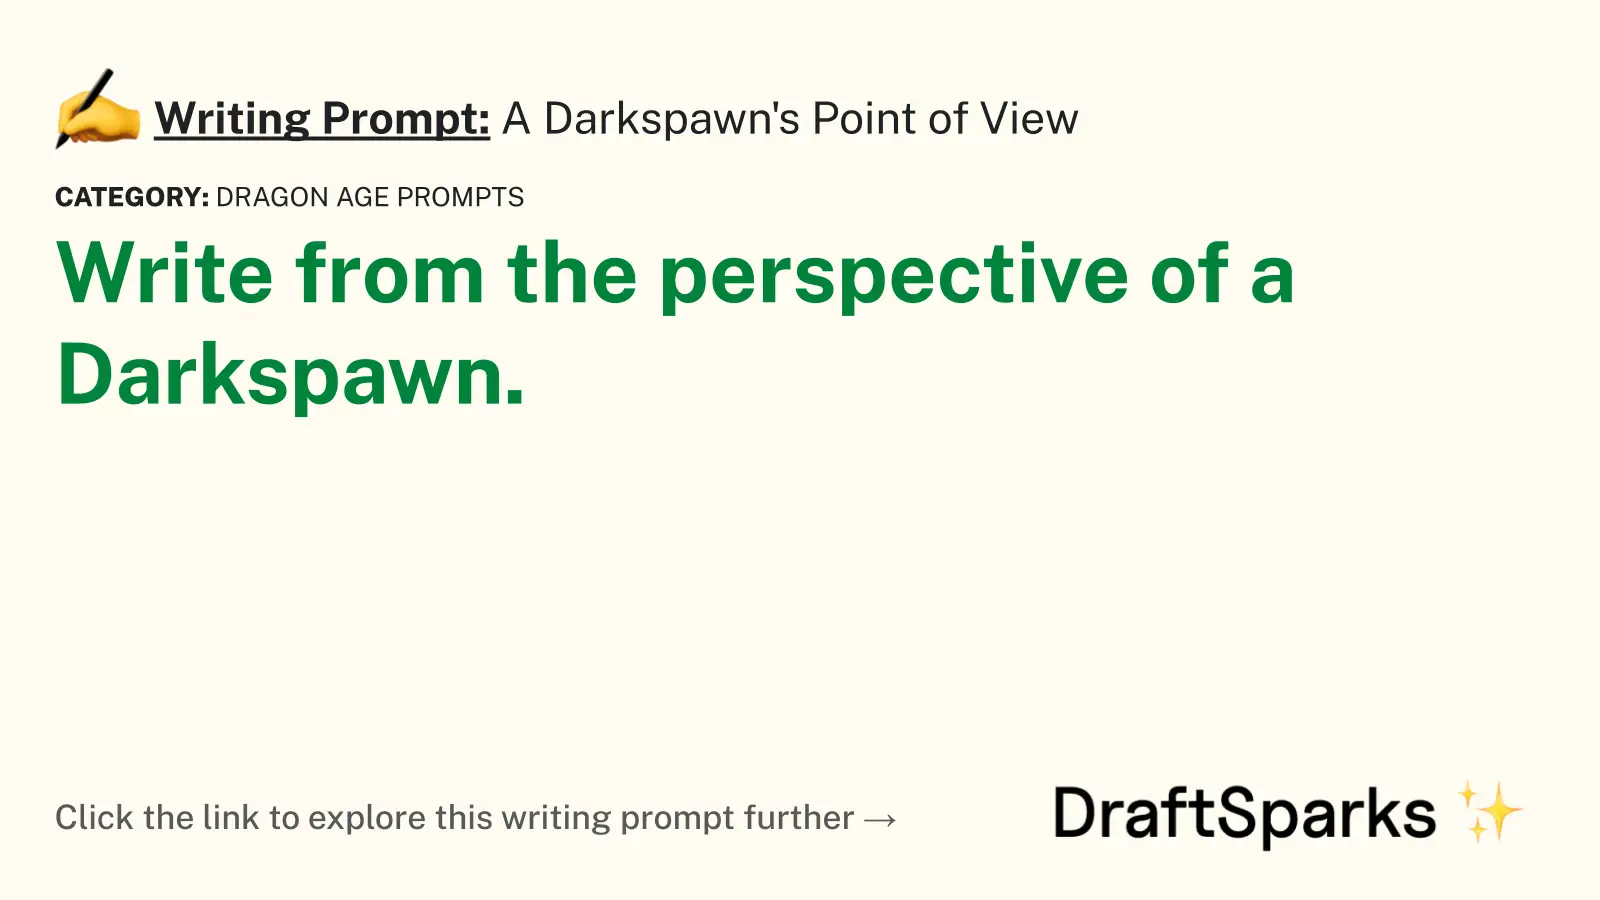 A Darkspawn’s Point of View